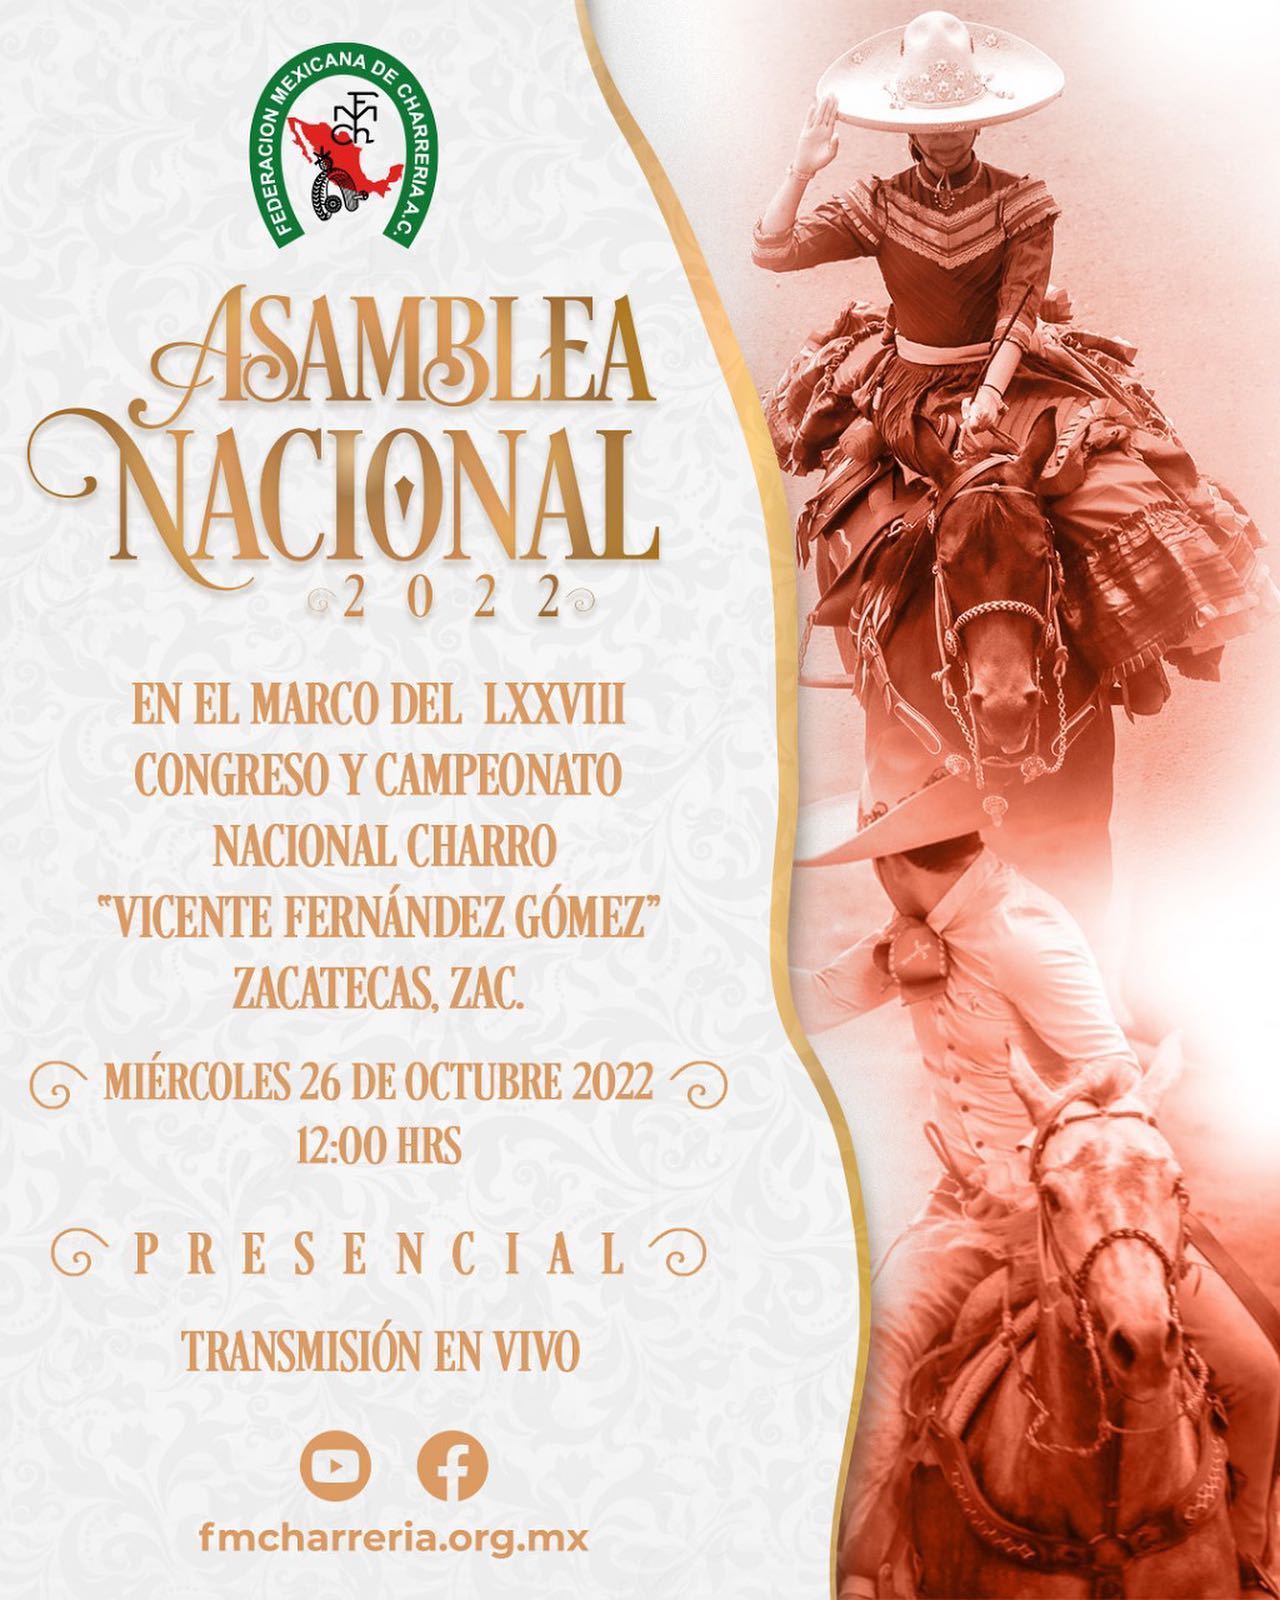 El próximo miércoles 26 de octubre se realizará la Asamblea Nacional de la Federación en la capital zacatecana